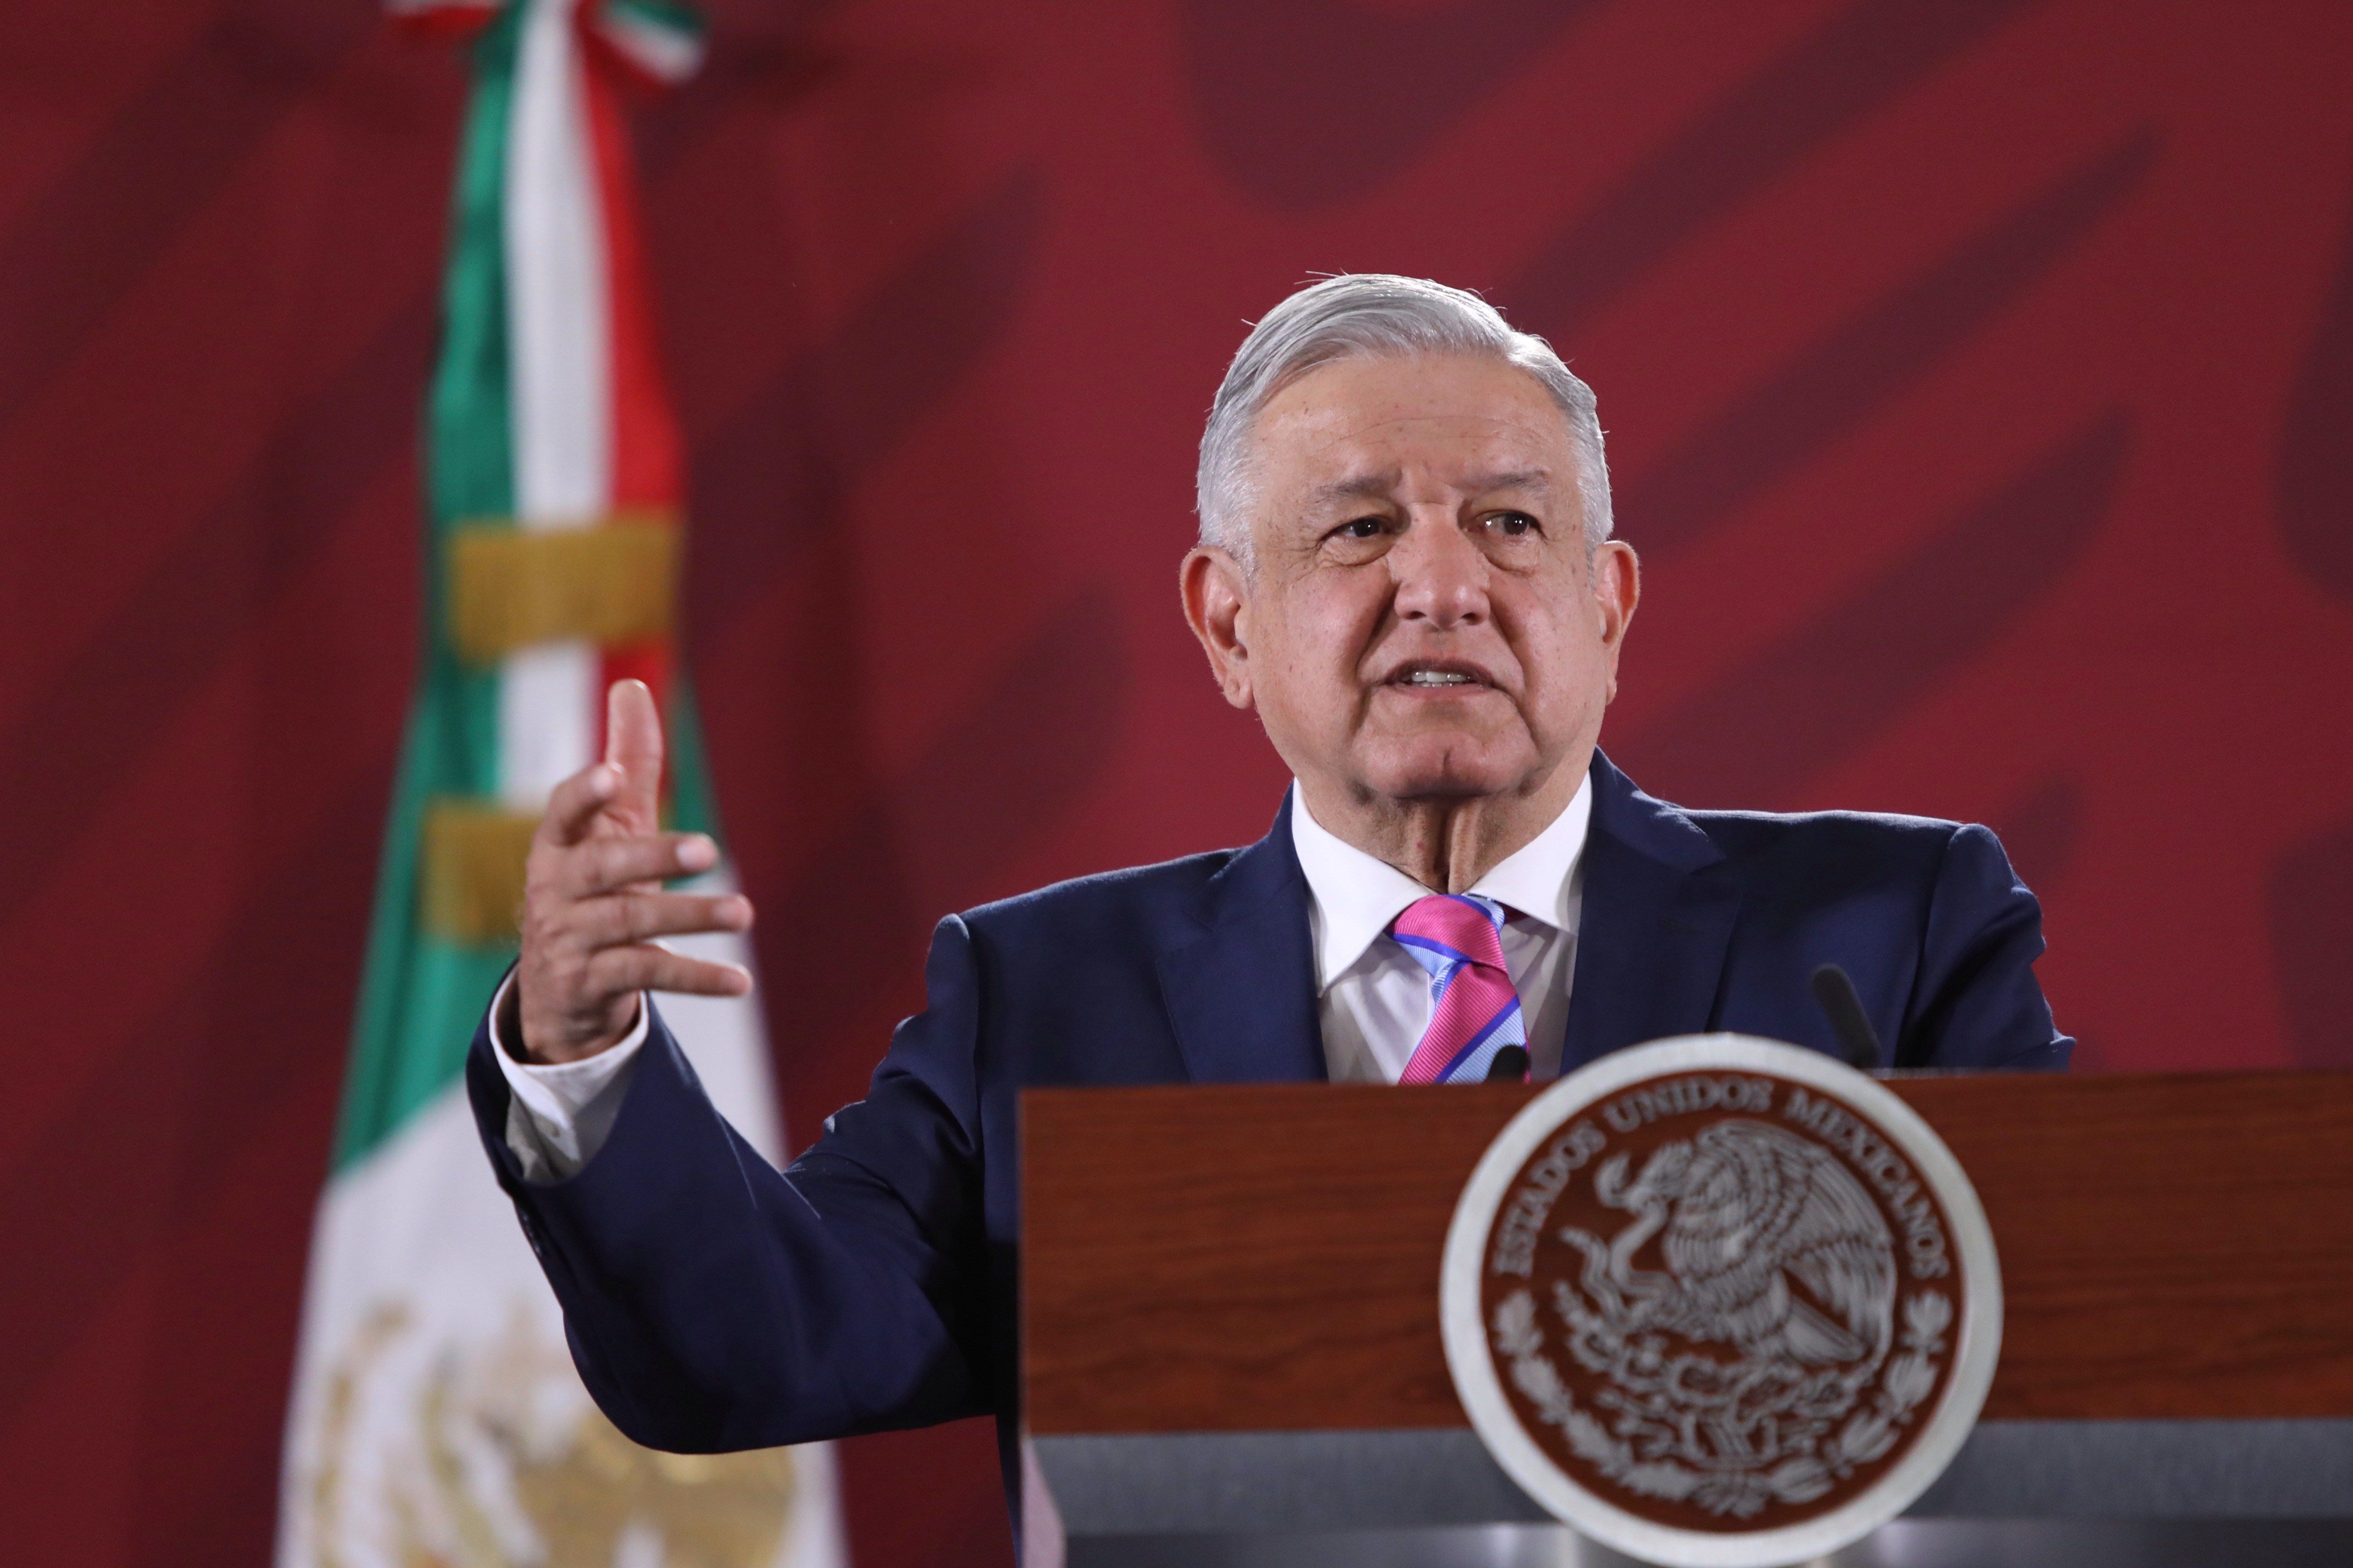  El presidente de México, Andrés Manuel López Obrador, rechaza presión de Trump sobre cárteles. (Foto Prensa Libre: EFE)